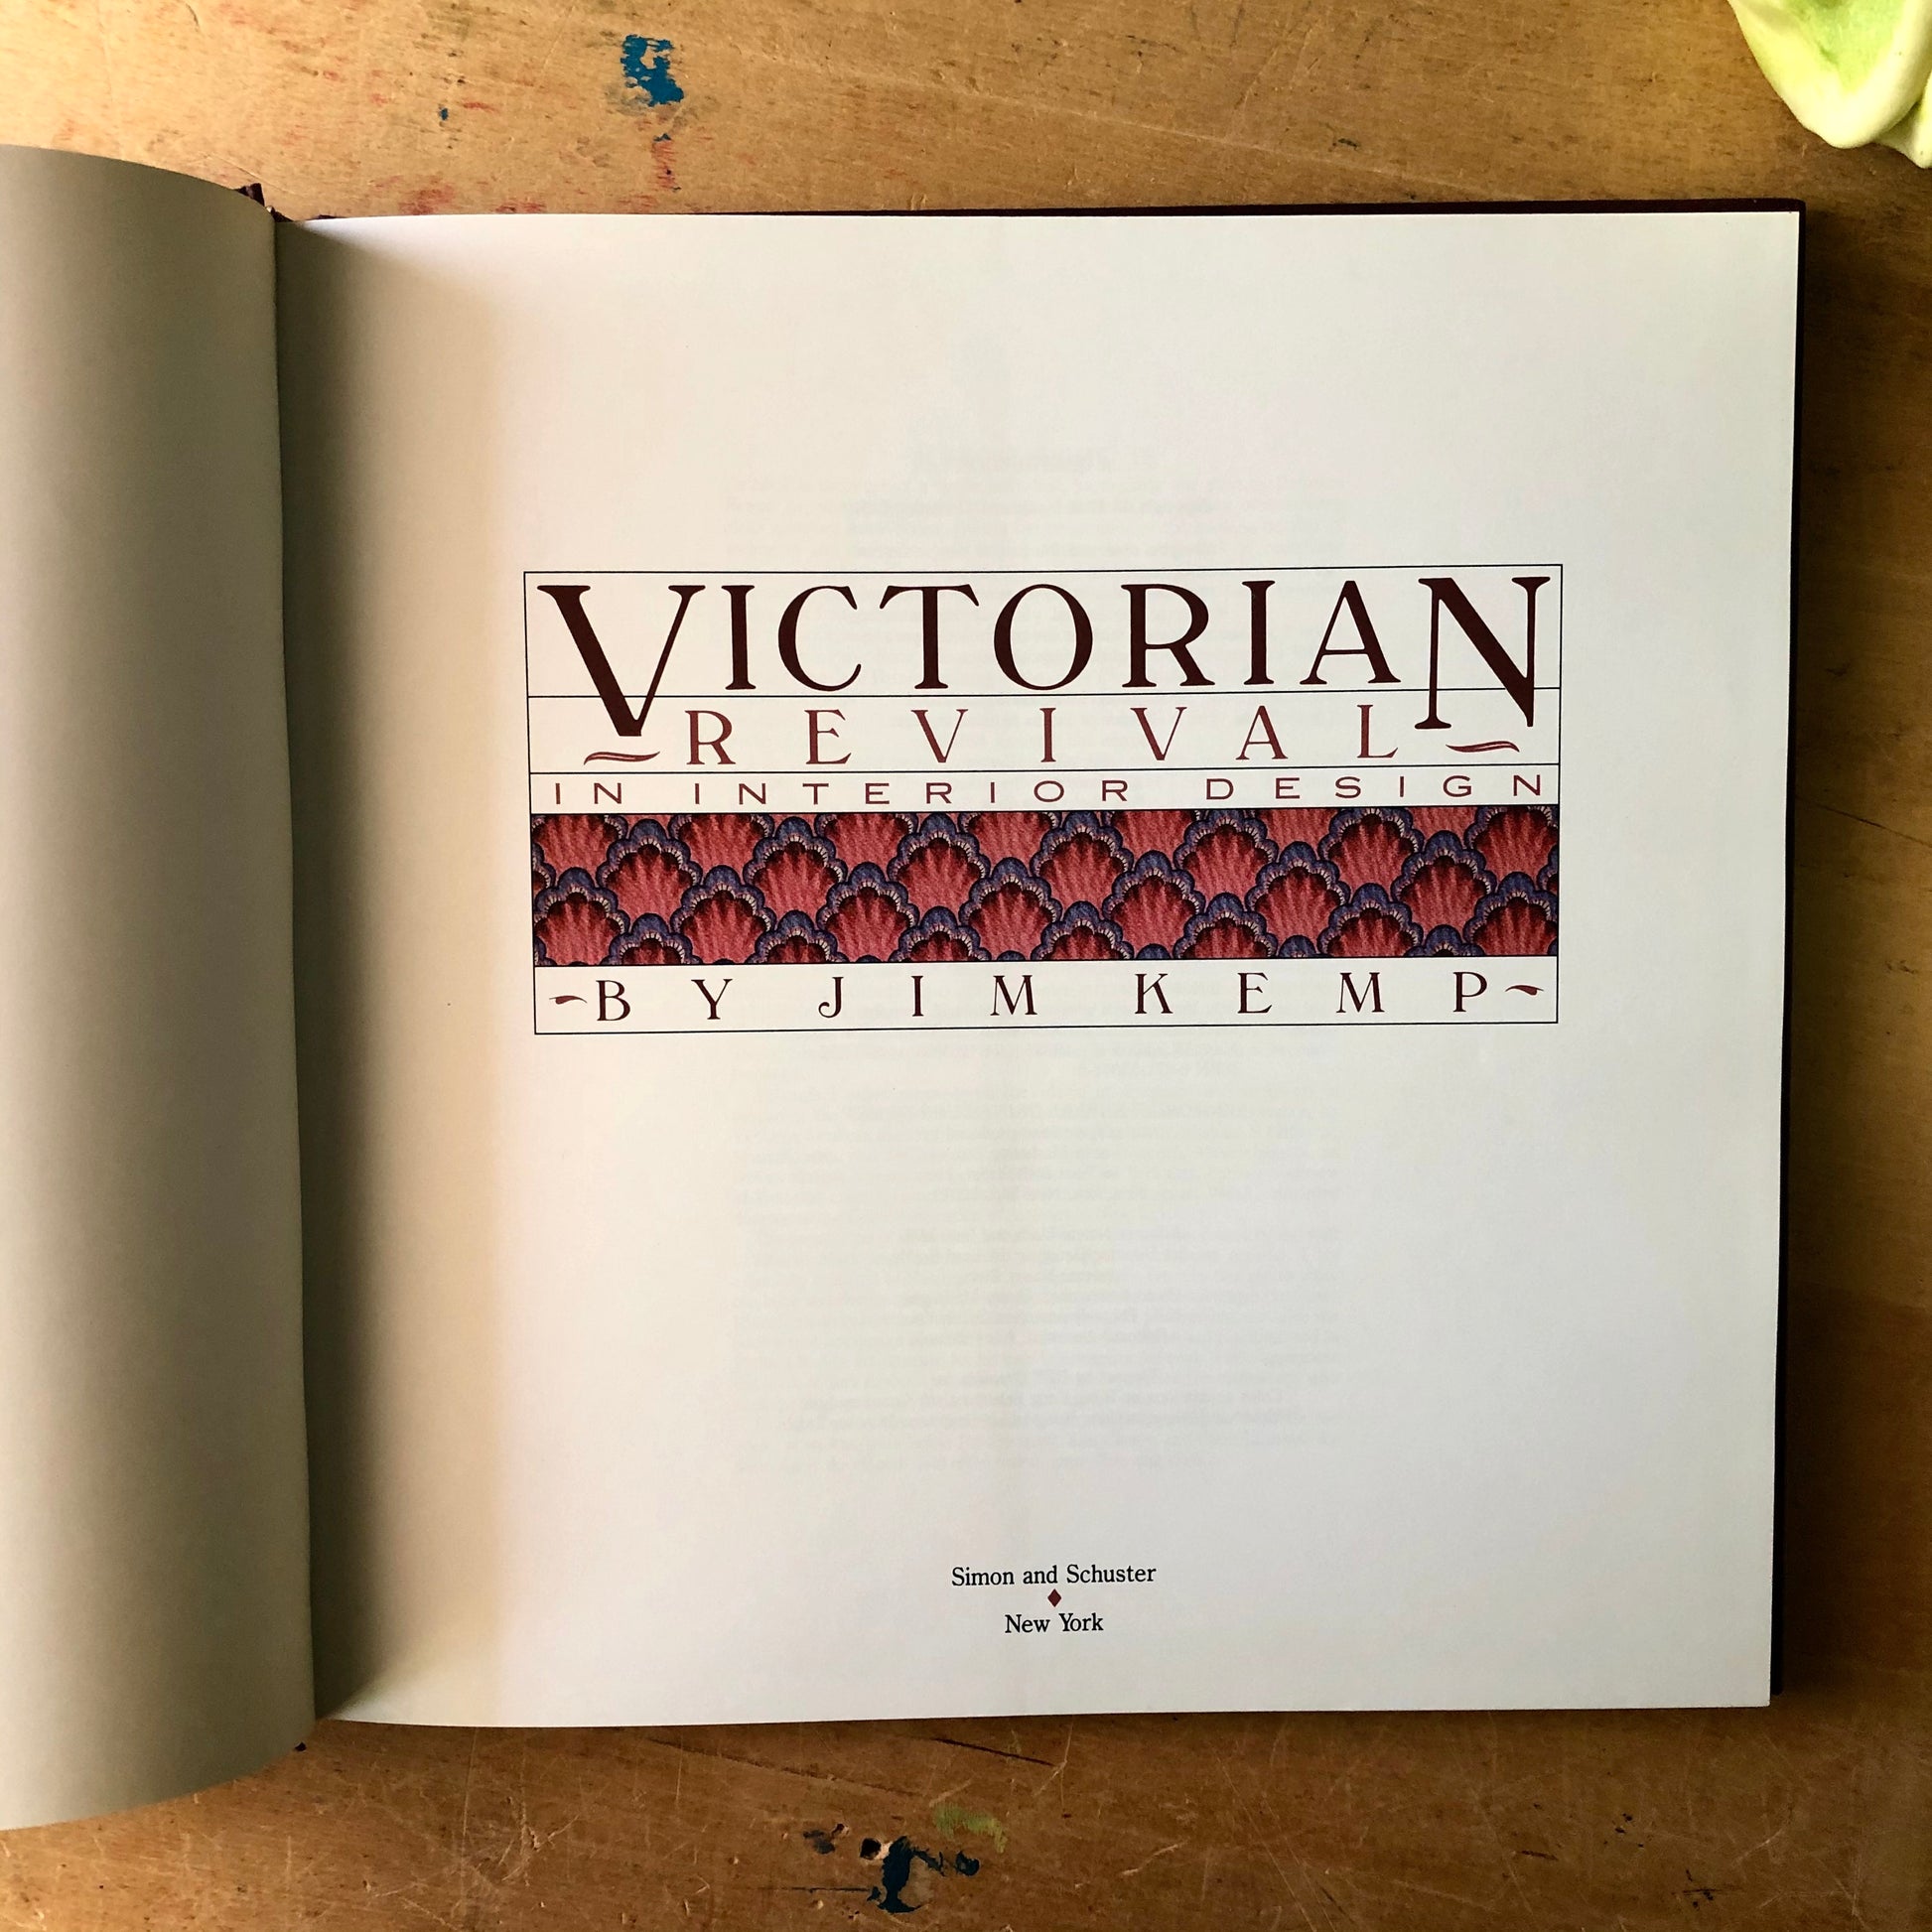 Victorian Revival Interior Design Book (1985)